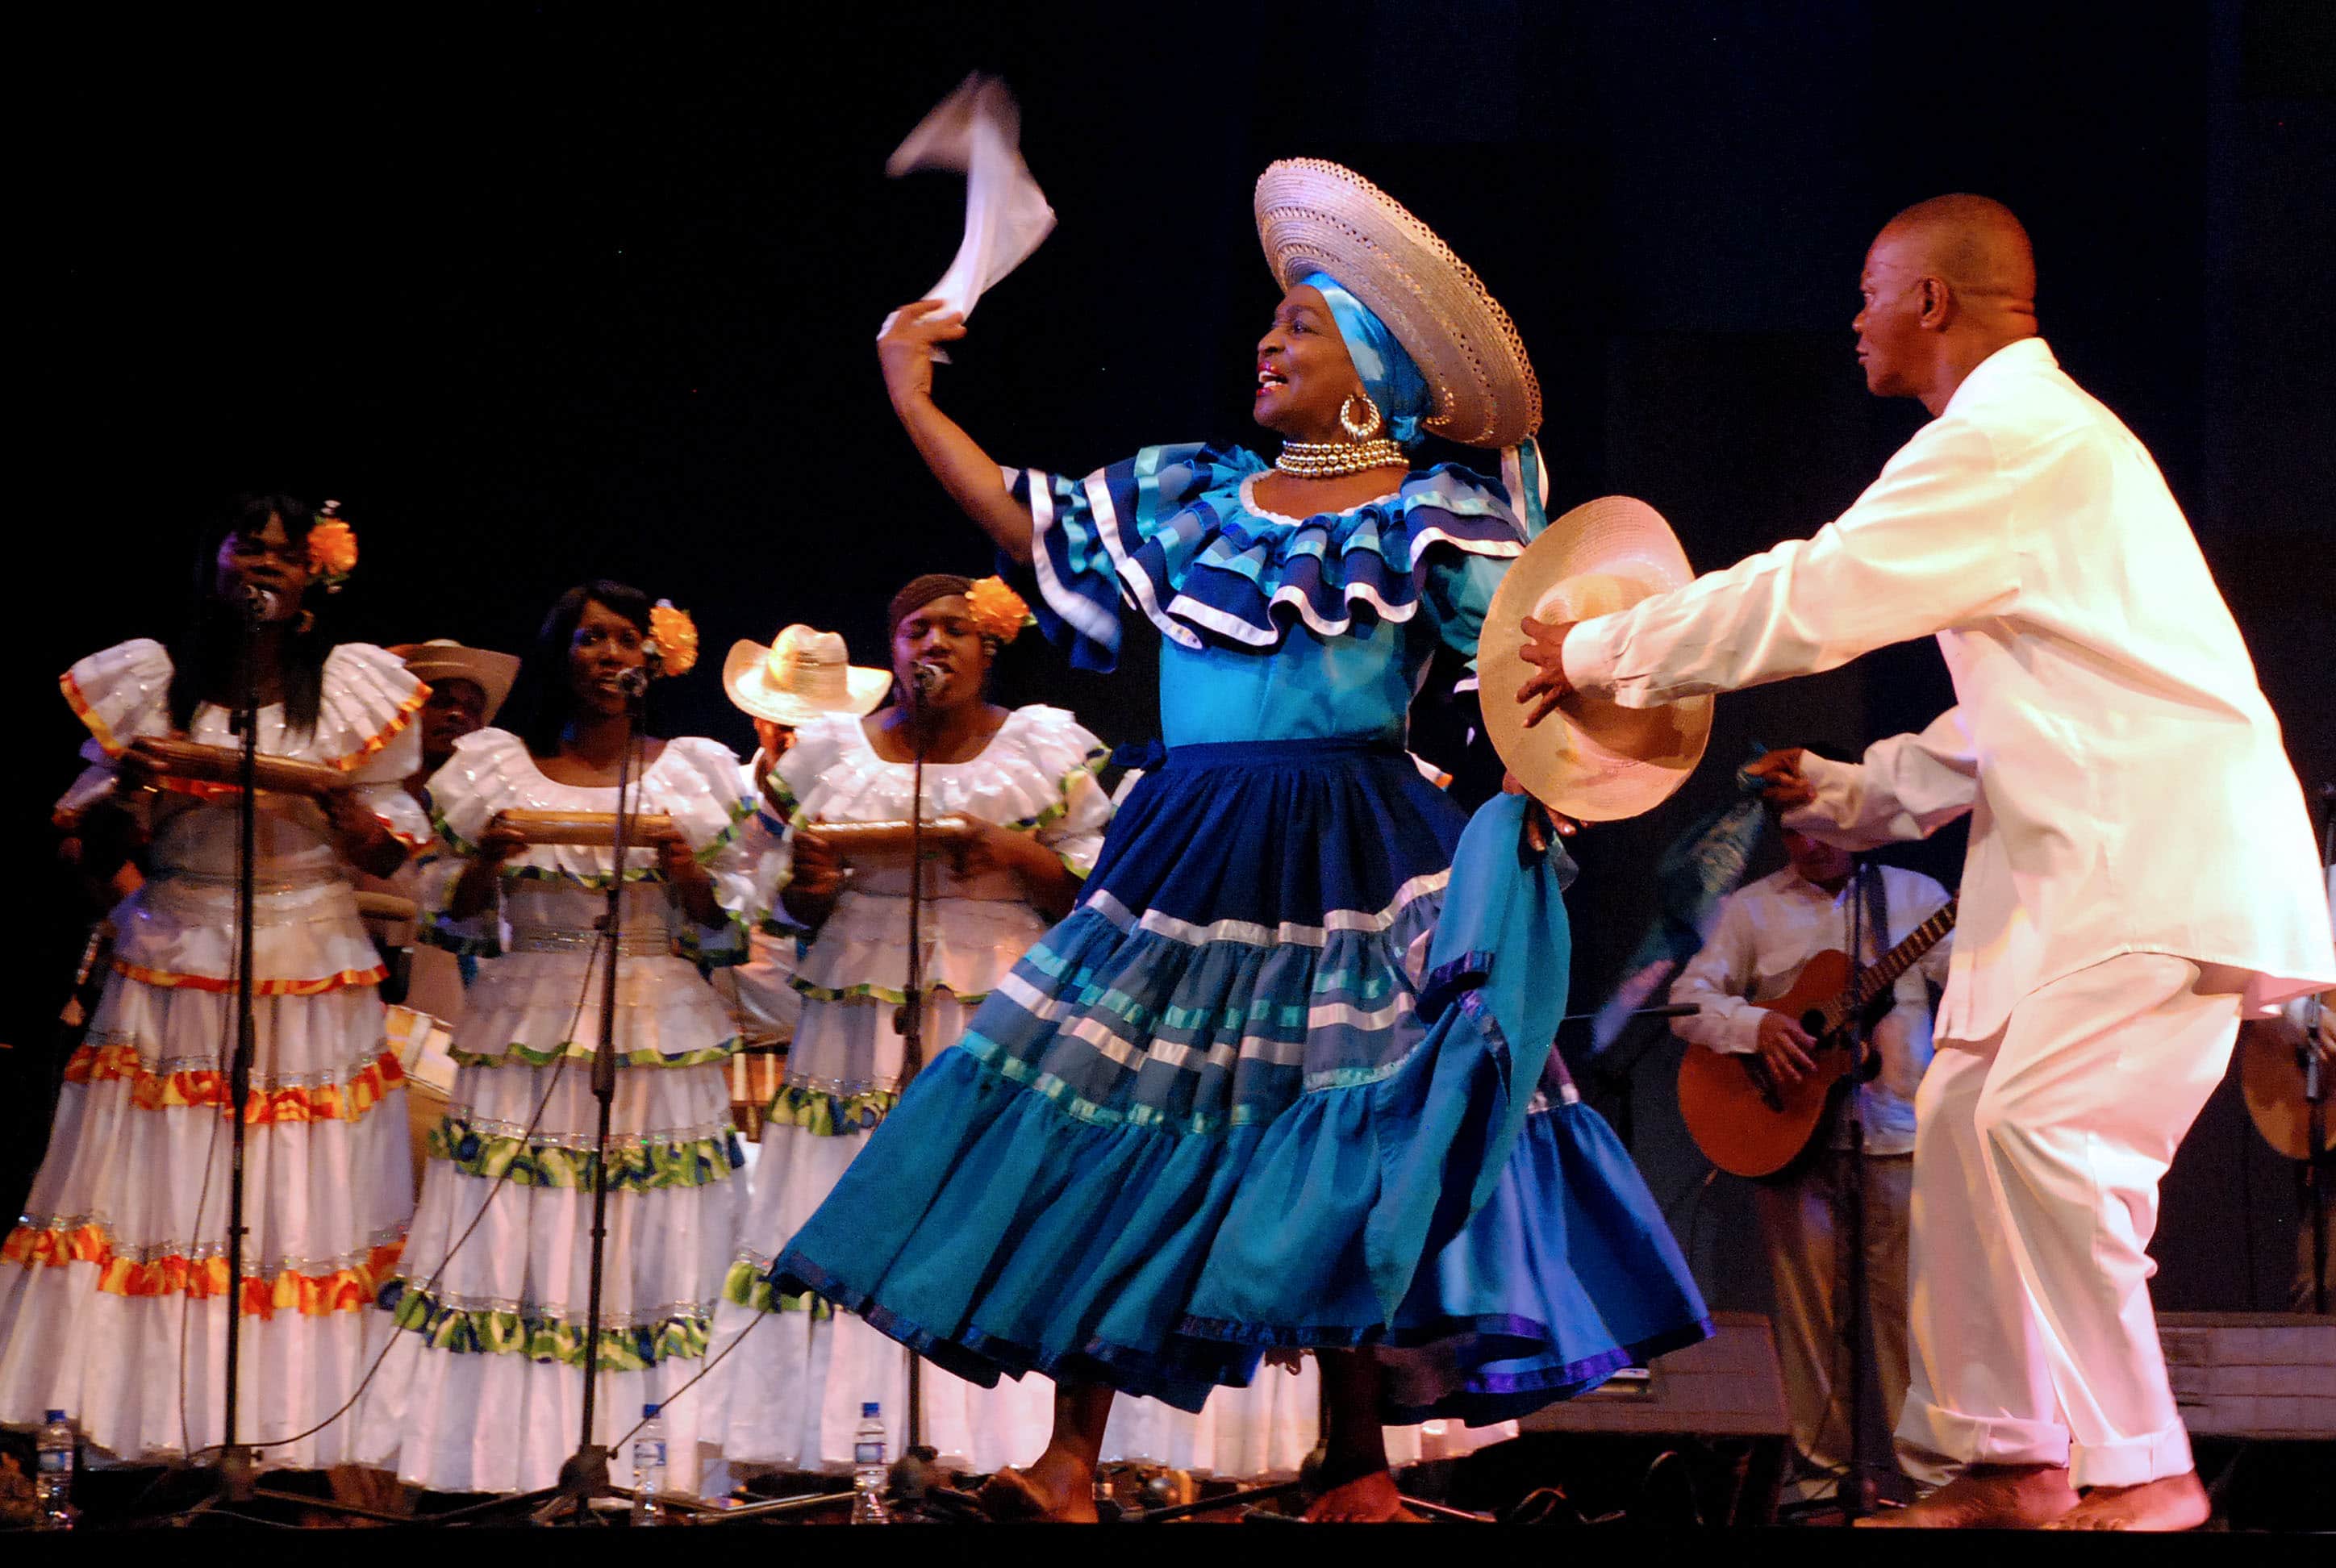 Región Pacífica, baile típico de la costa pacifica, currulao, Colombia el pais mas acogedor del mundo del mundo